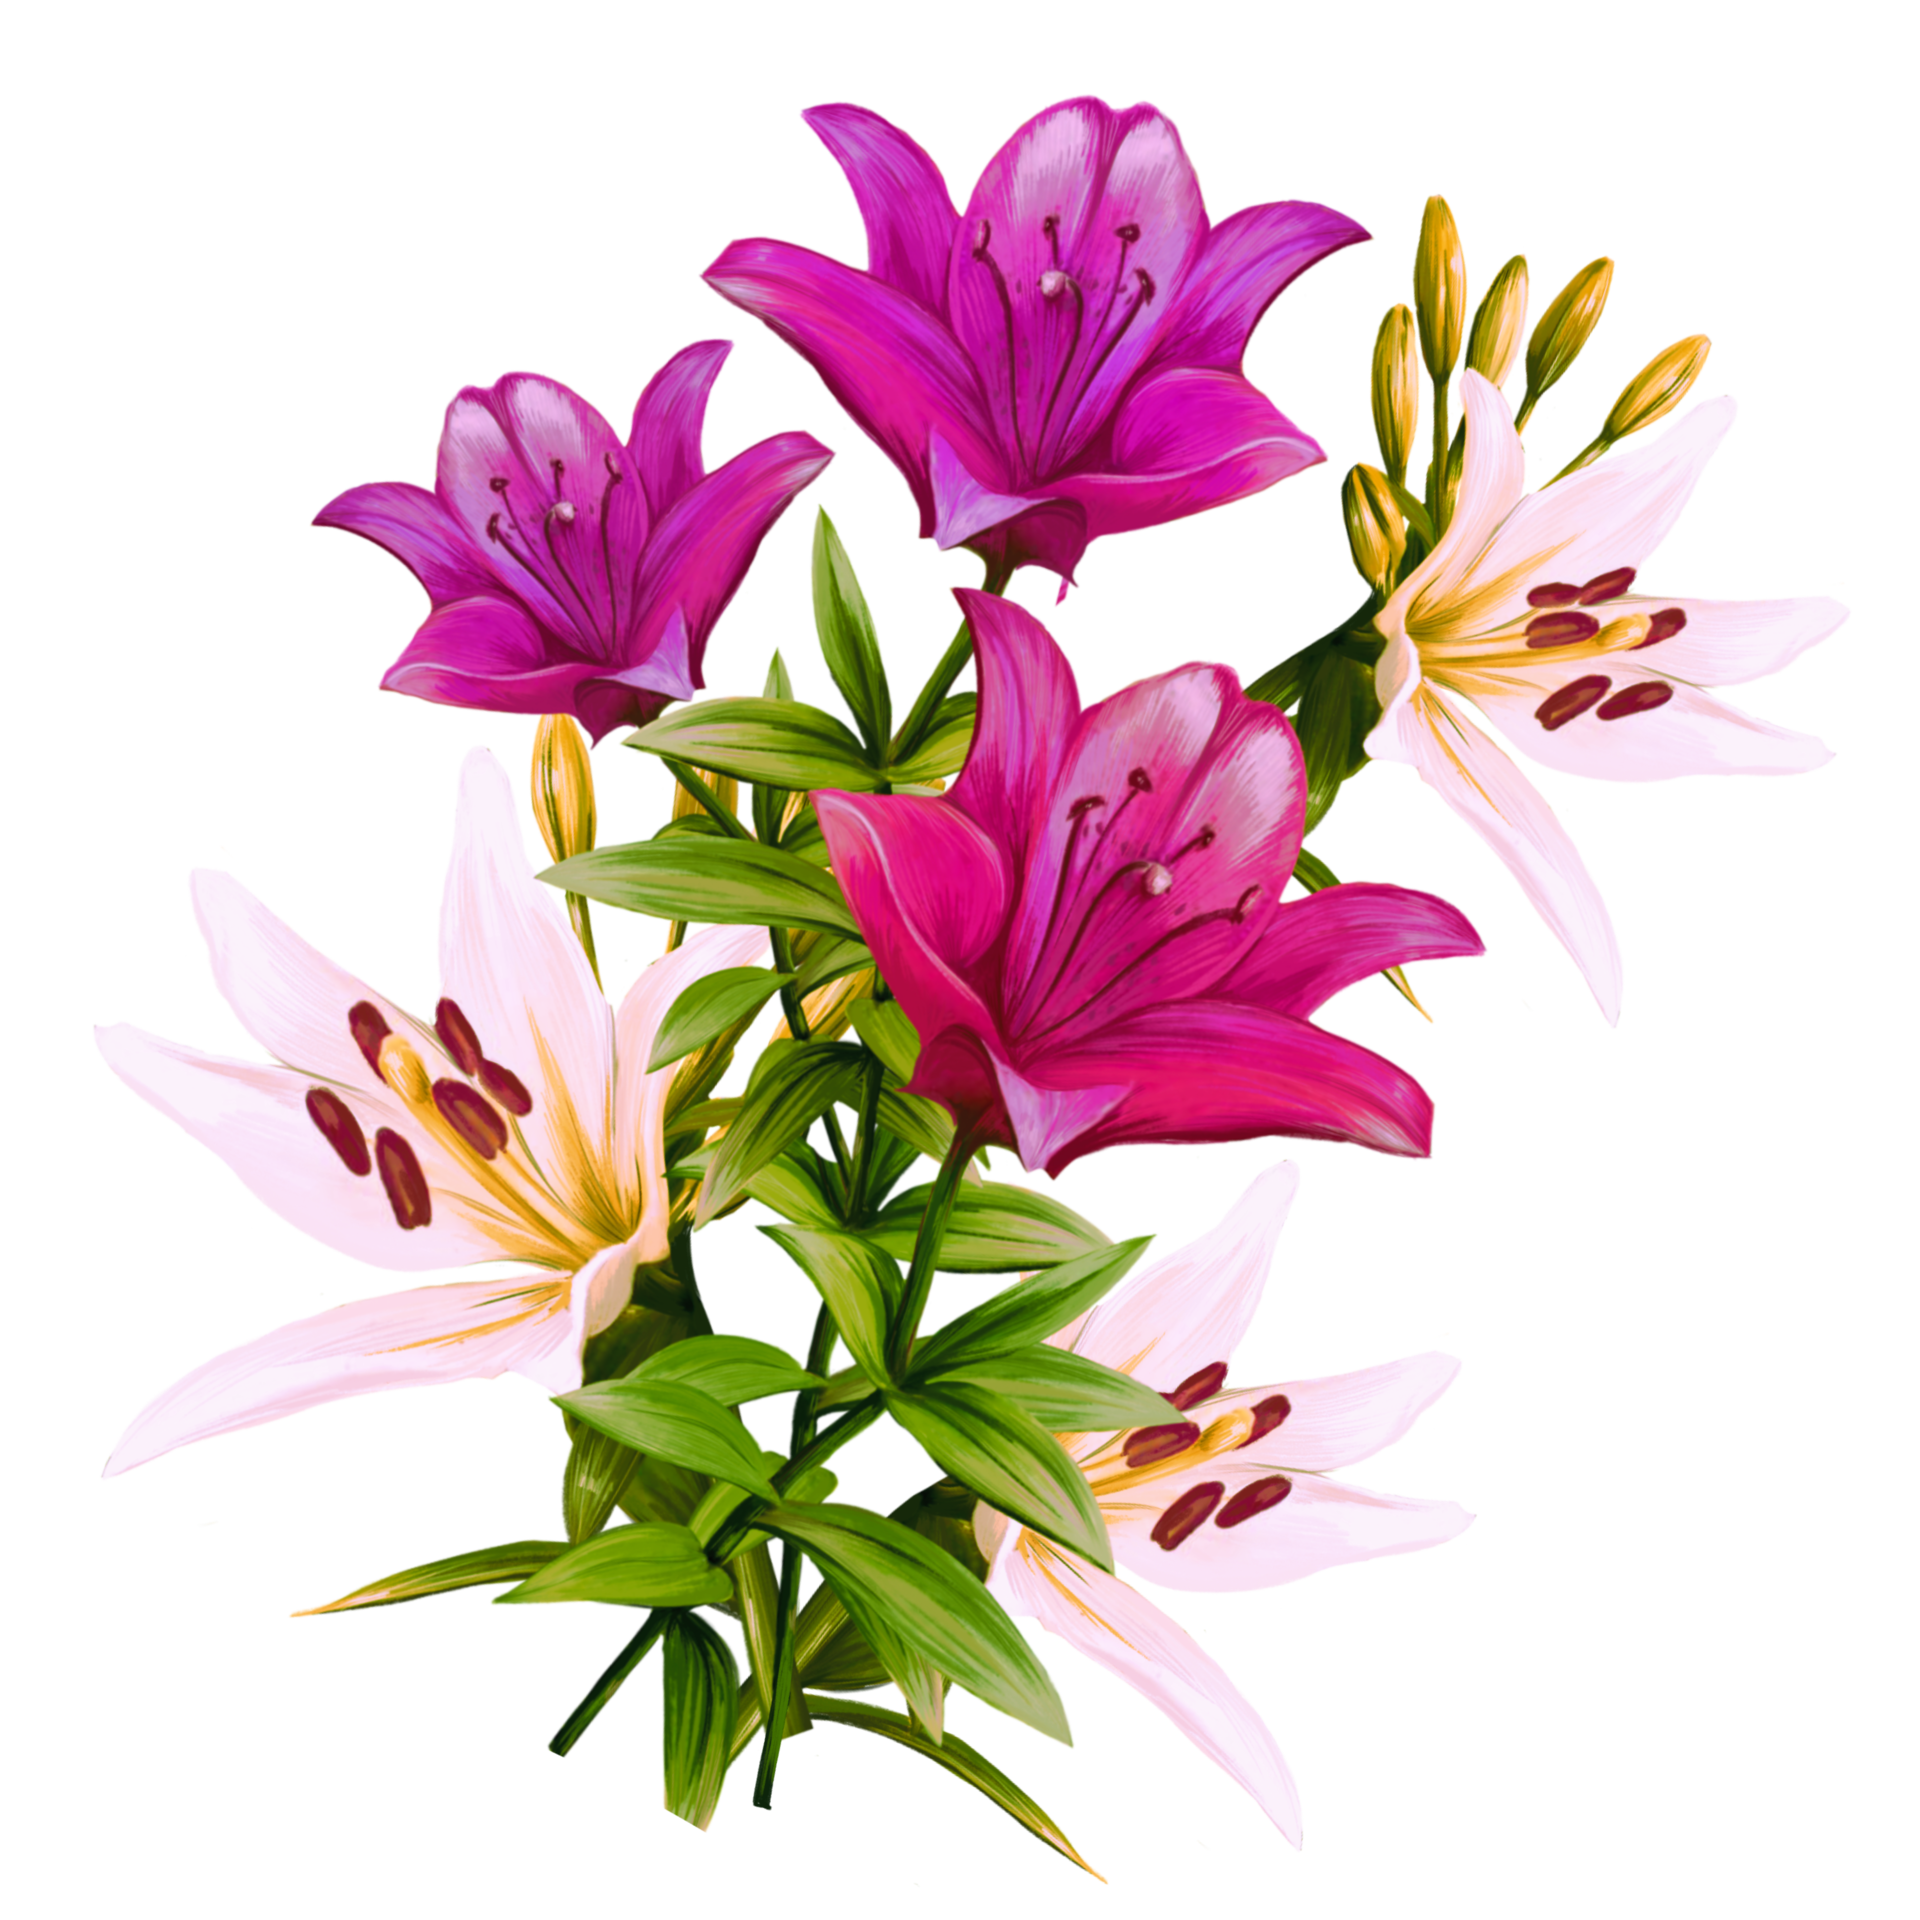 Free ramo de flores de lirios multicolores, ilustración de azucenas 9904347  PNG with Transparent Background